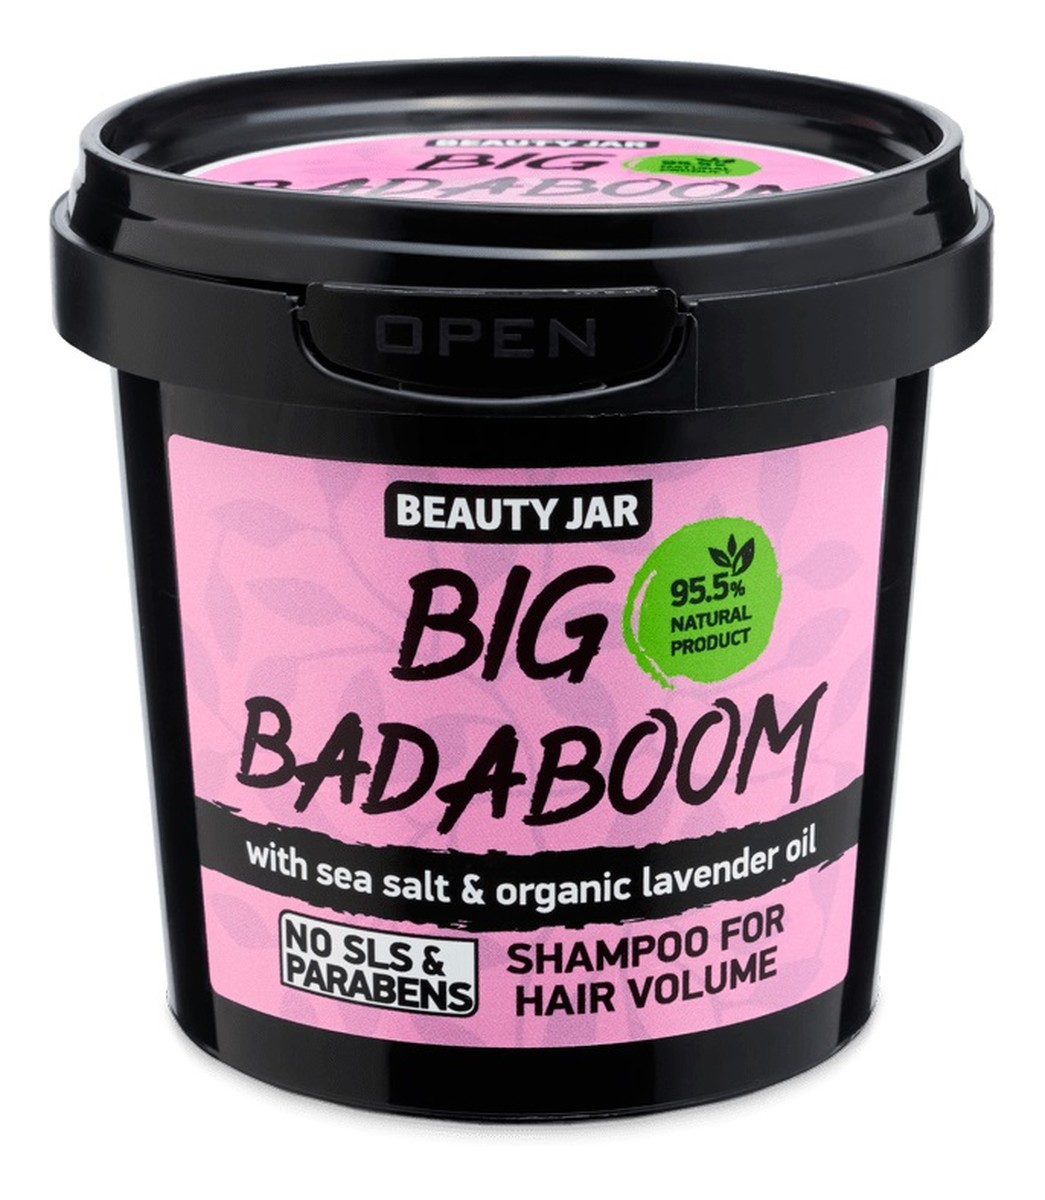 Big badaboom szampon dodający włosom objętości 150g